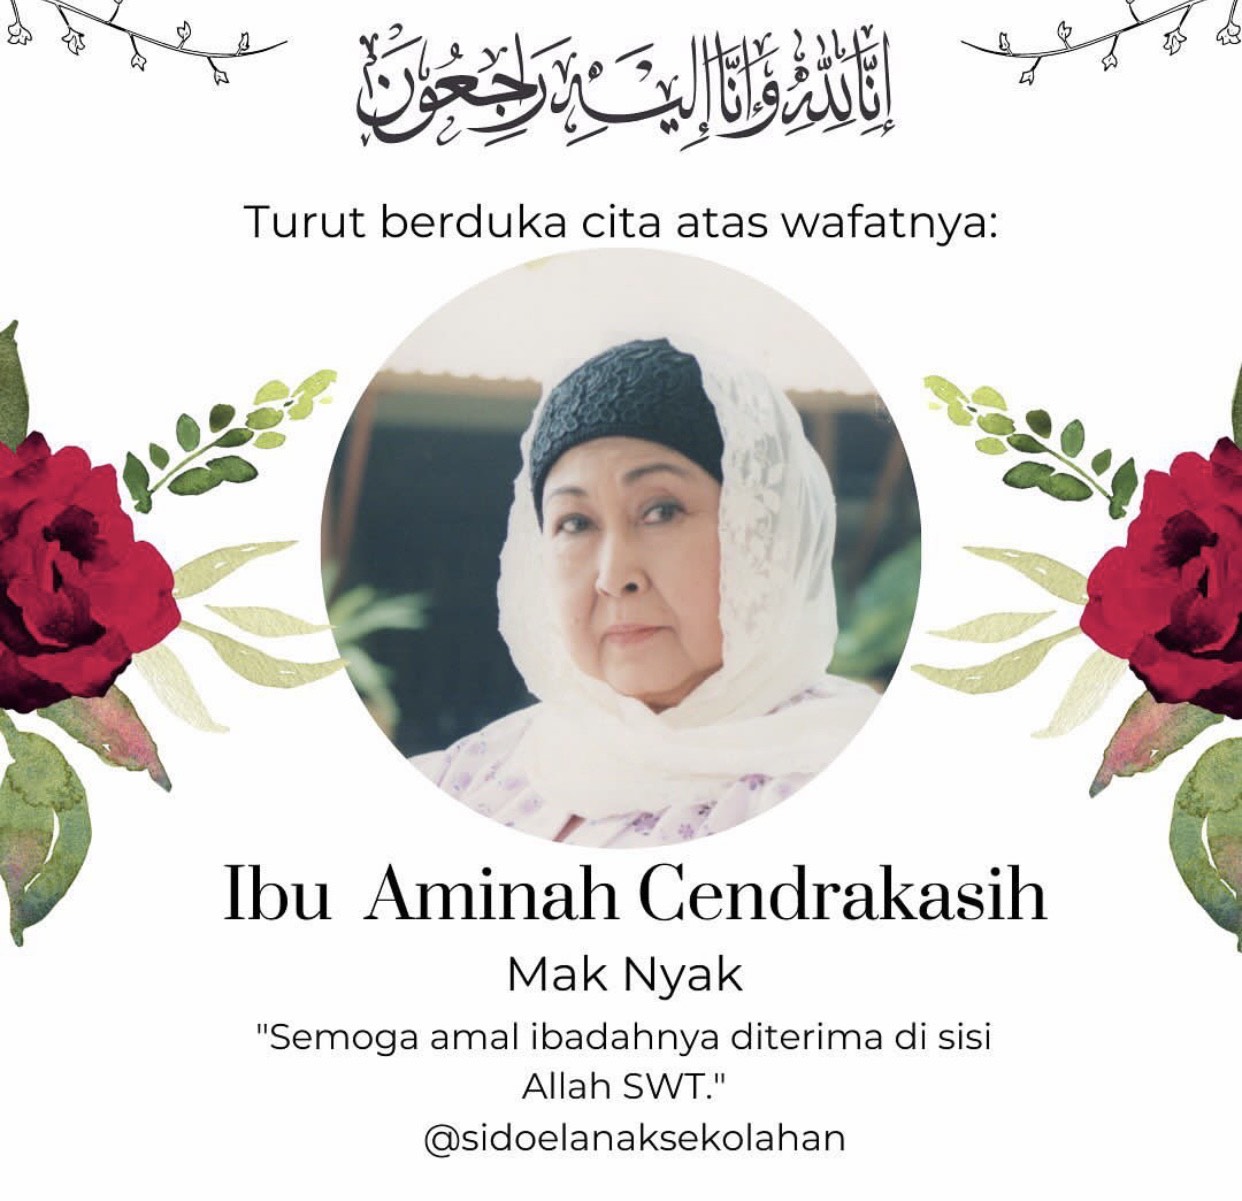 Profil Aminah Cendrakasih, Pemeran Mak Nyak yang Tutup Usia